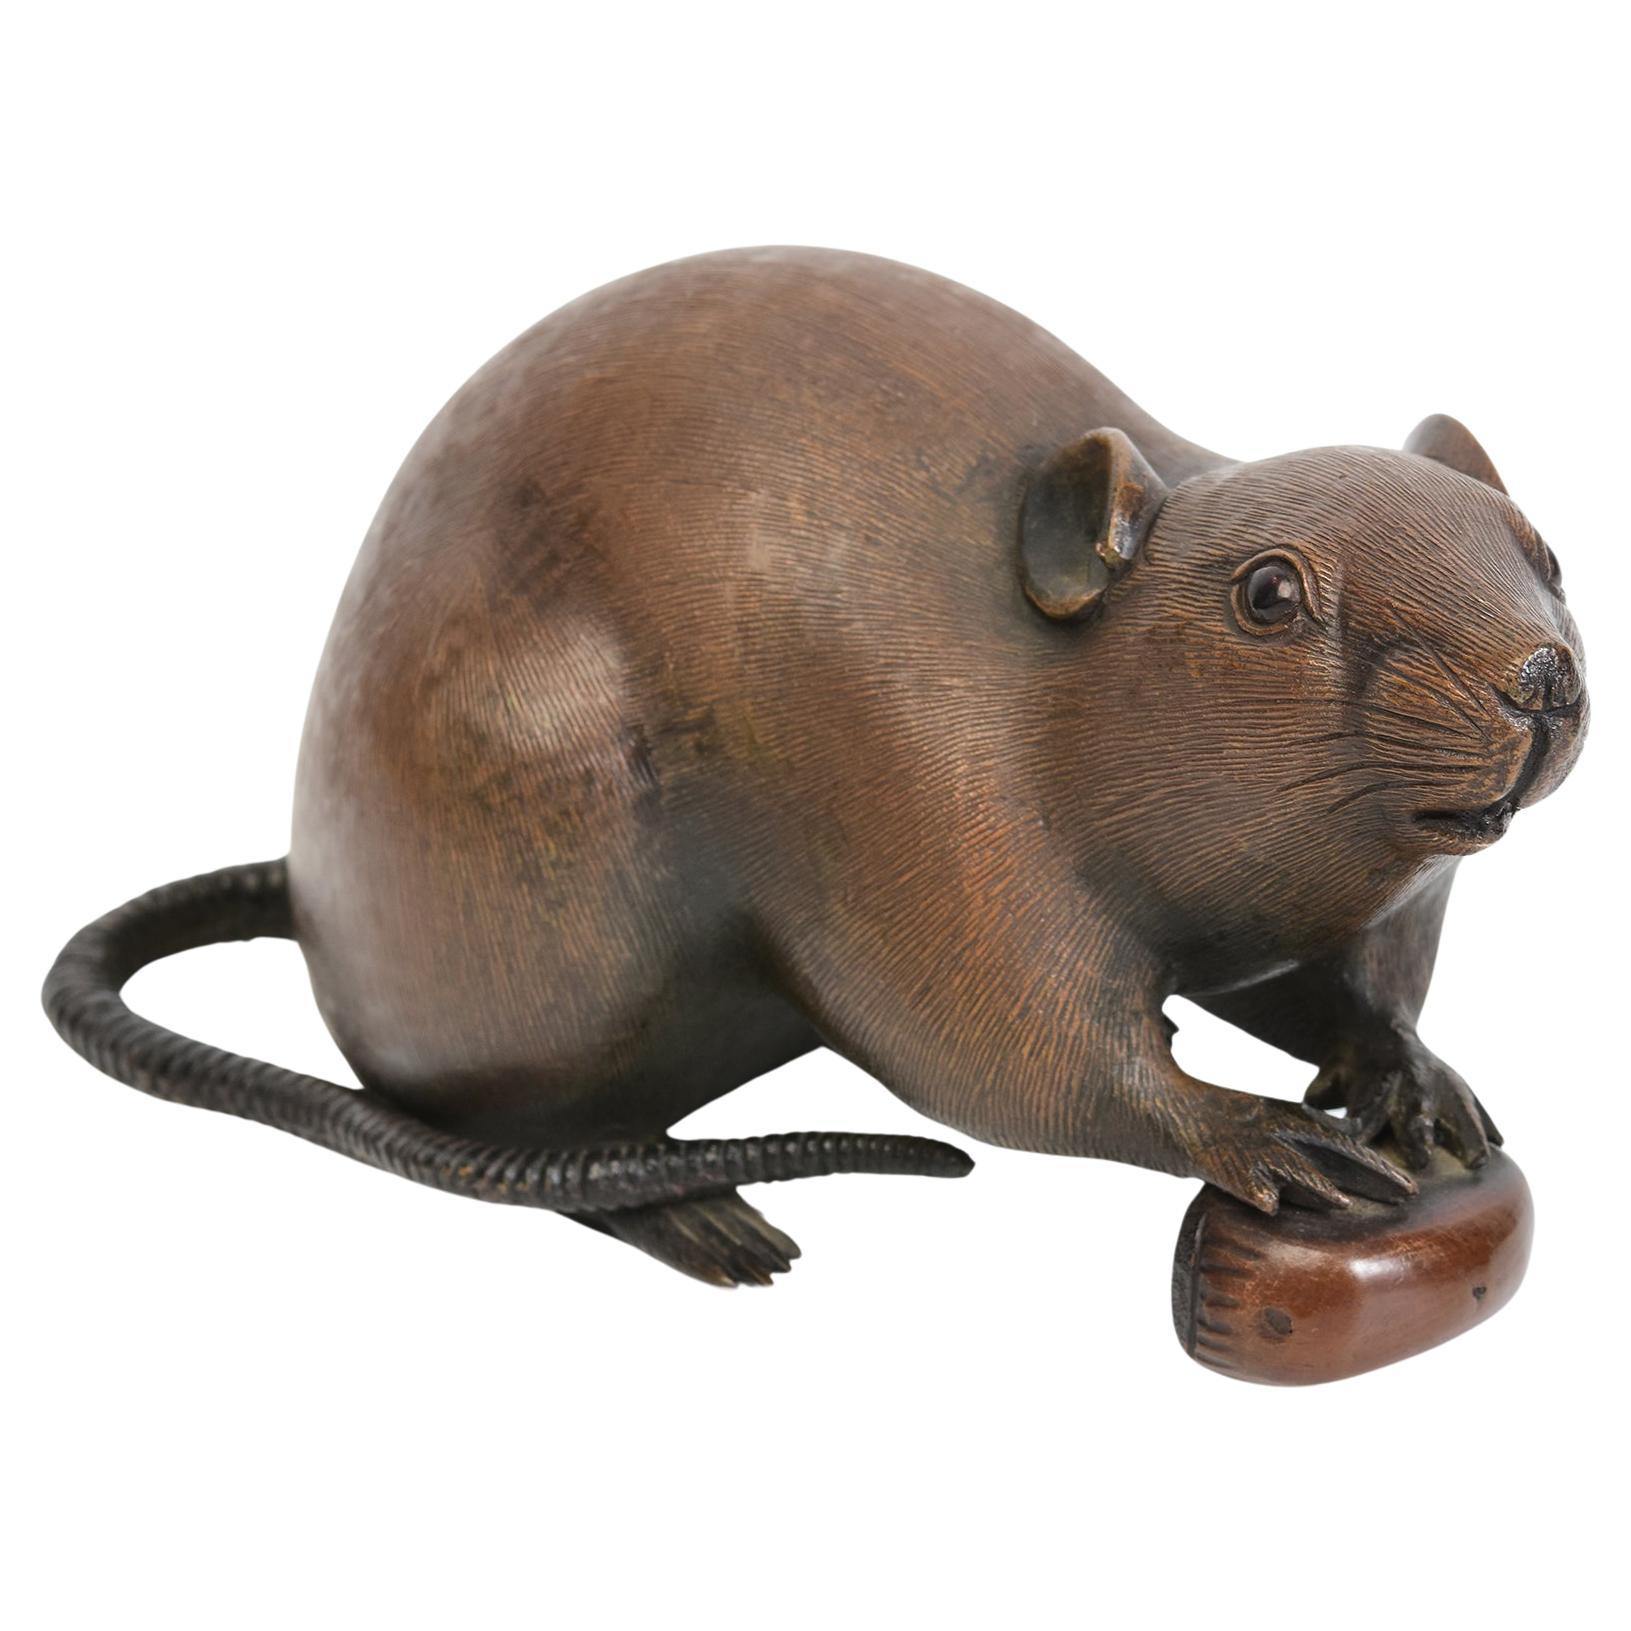 19. Jh., Meiji, Antike japanische Bronze Tier Ratte / Maus, die eine Kastanie hält